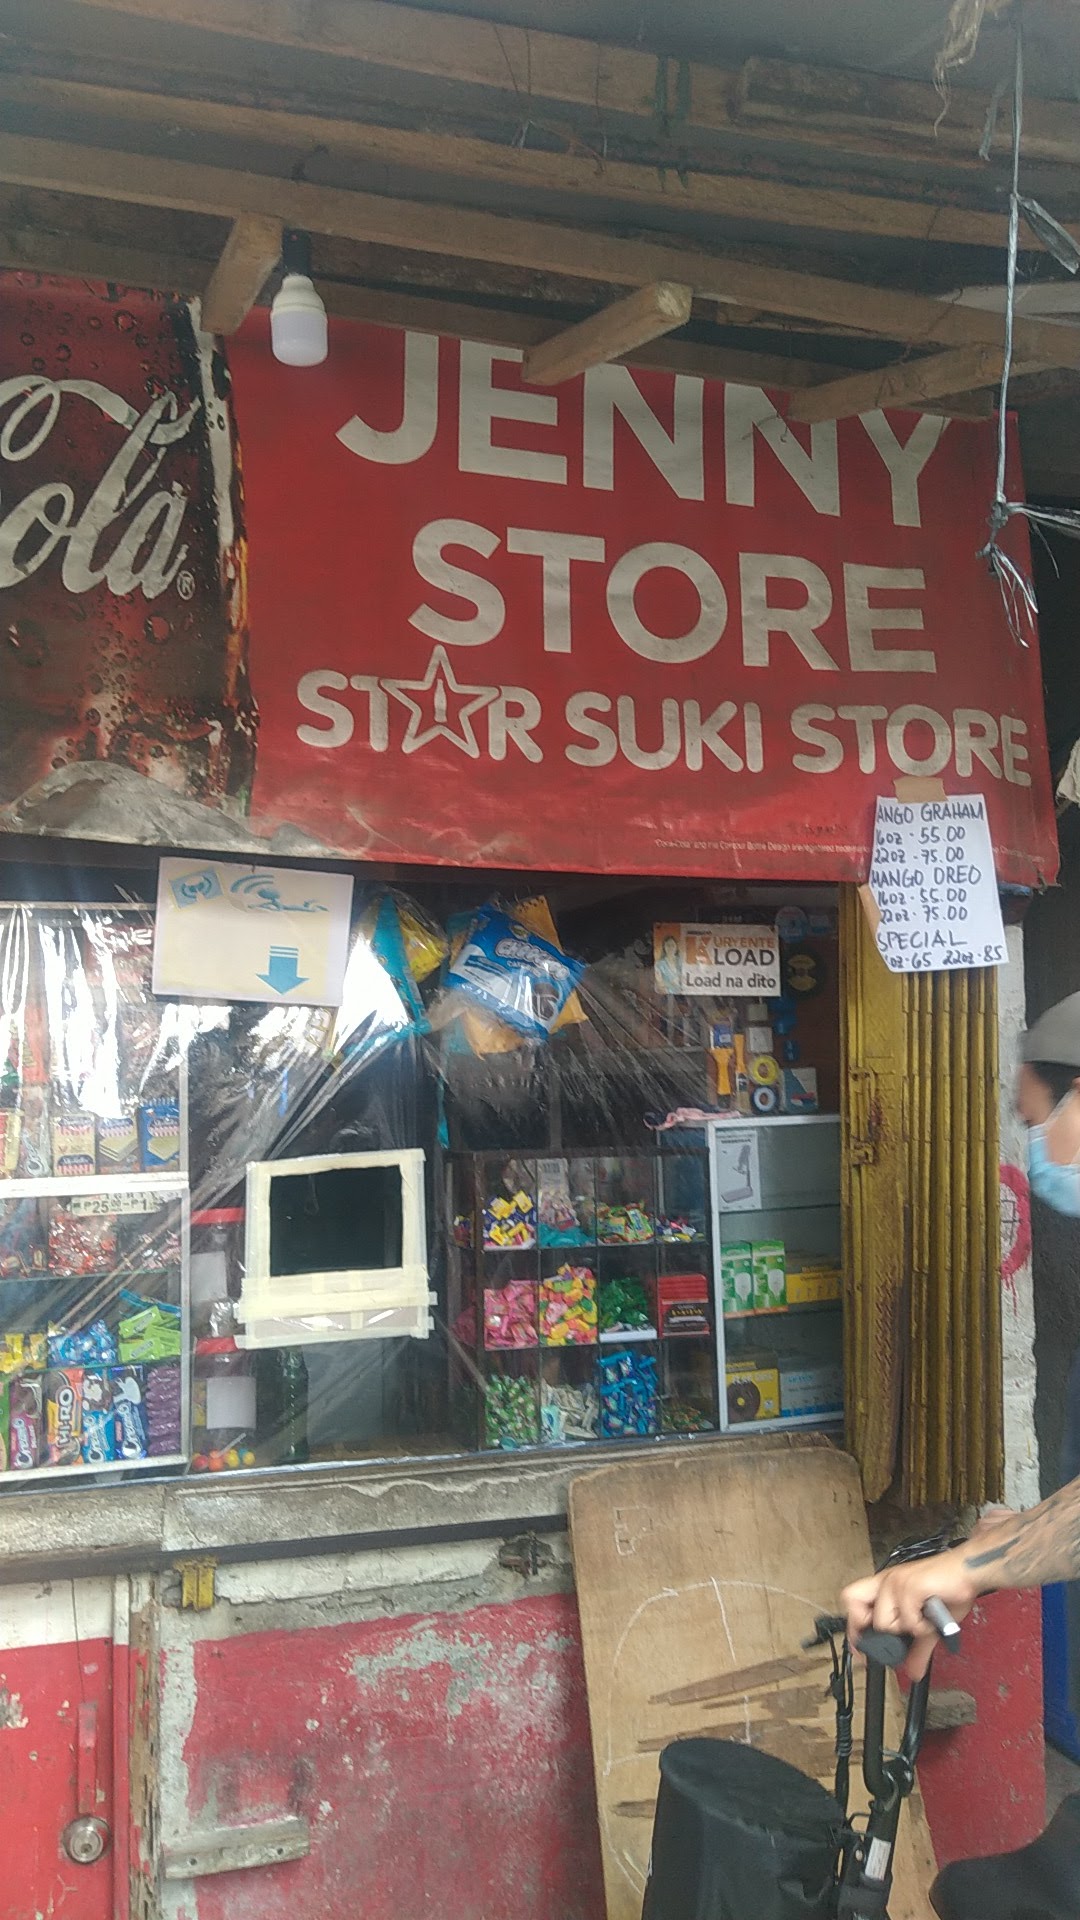 Jenny store